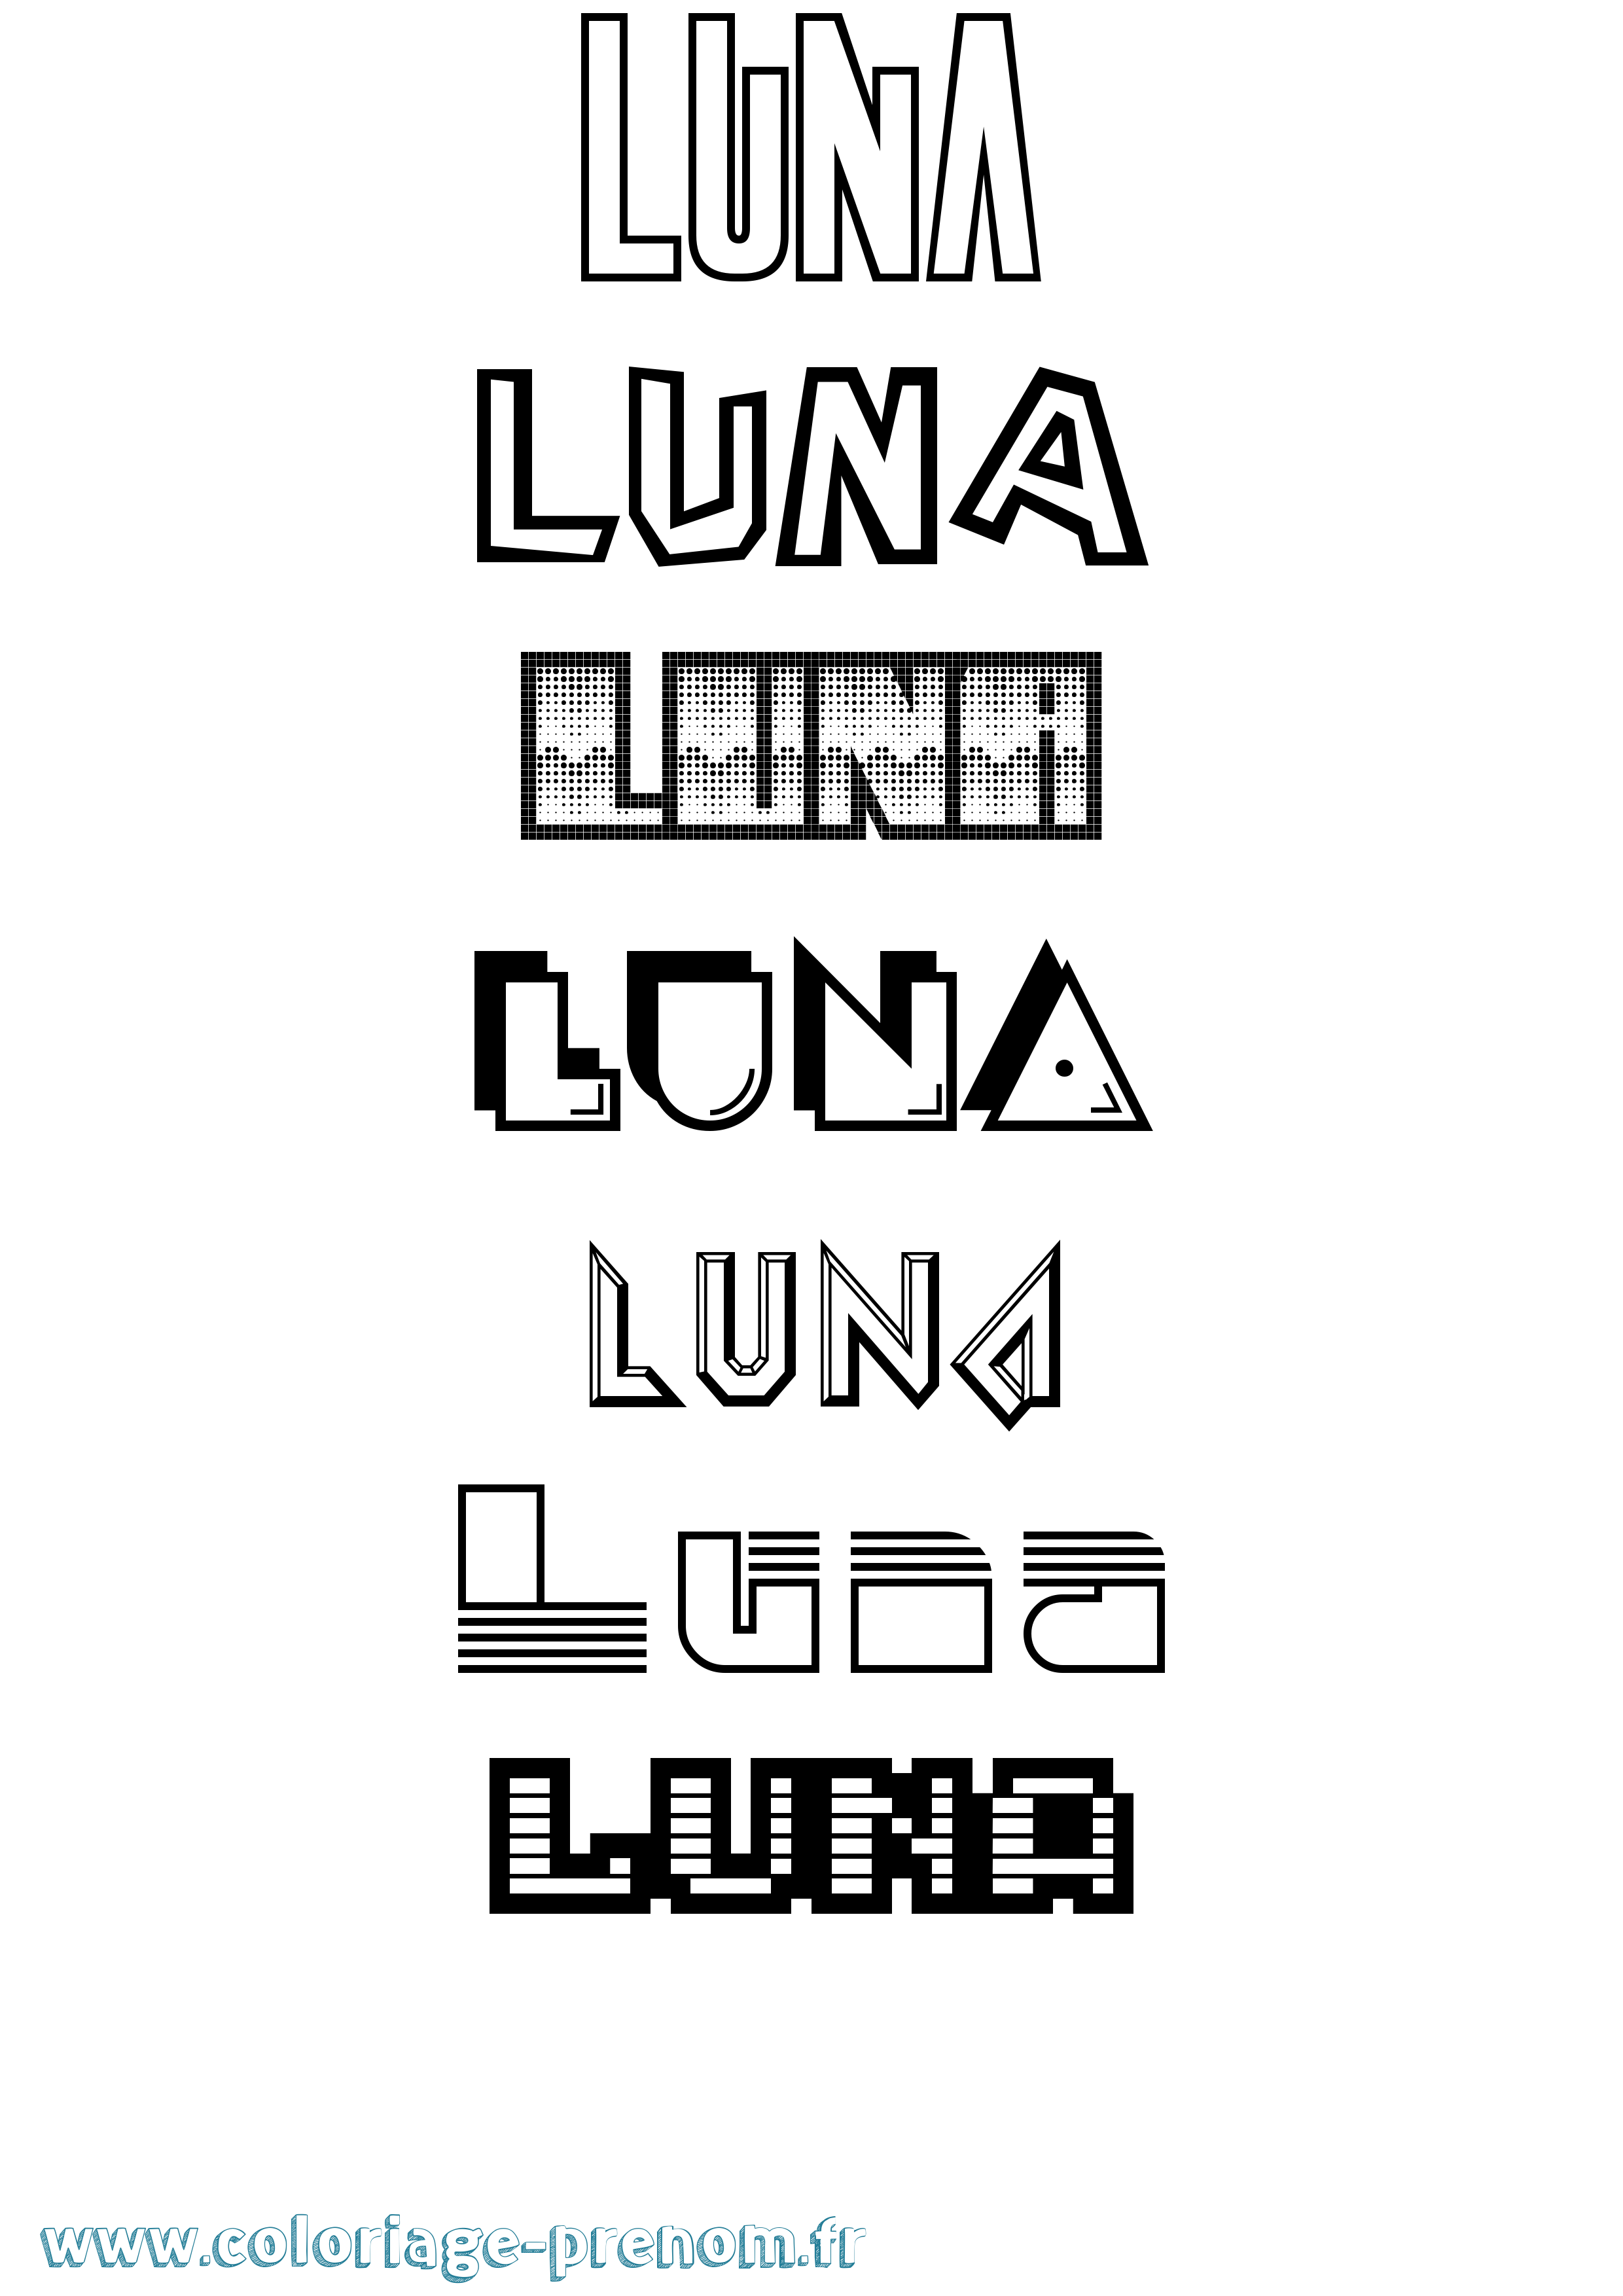 Coloriage prénom Luna